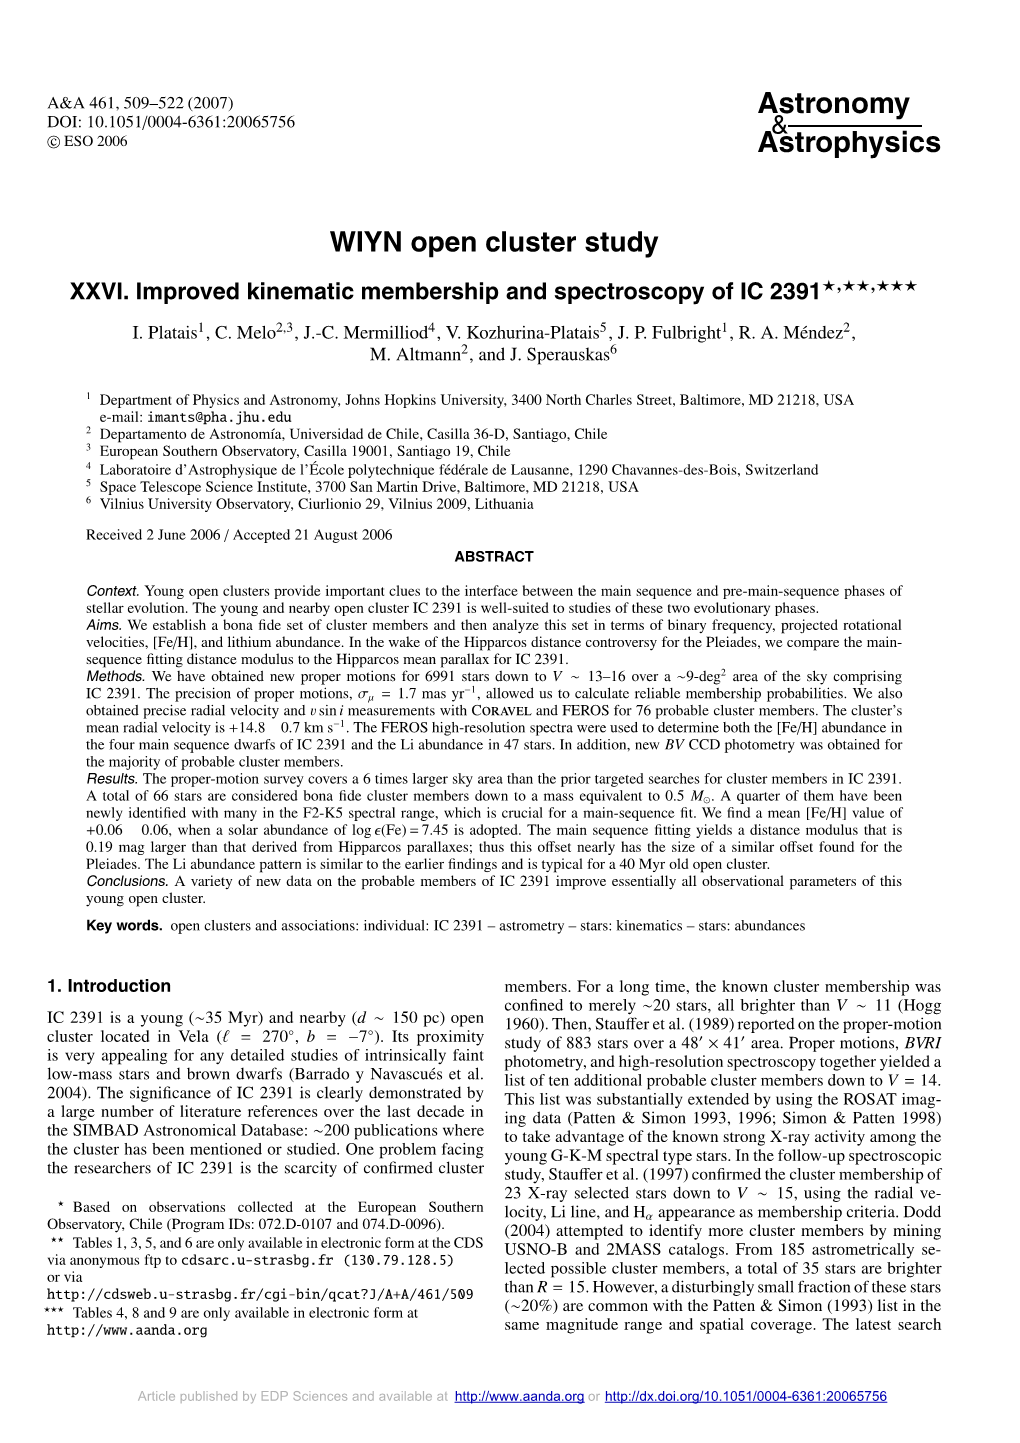 WIYN Open Cluster Study